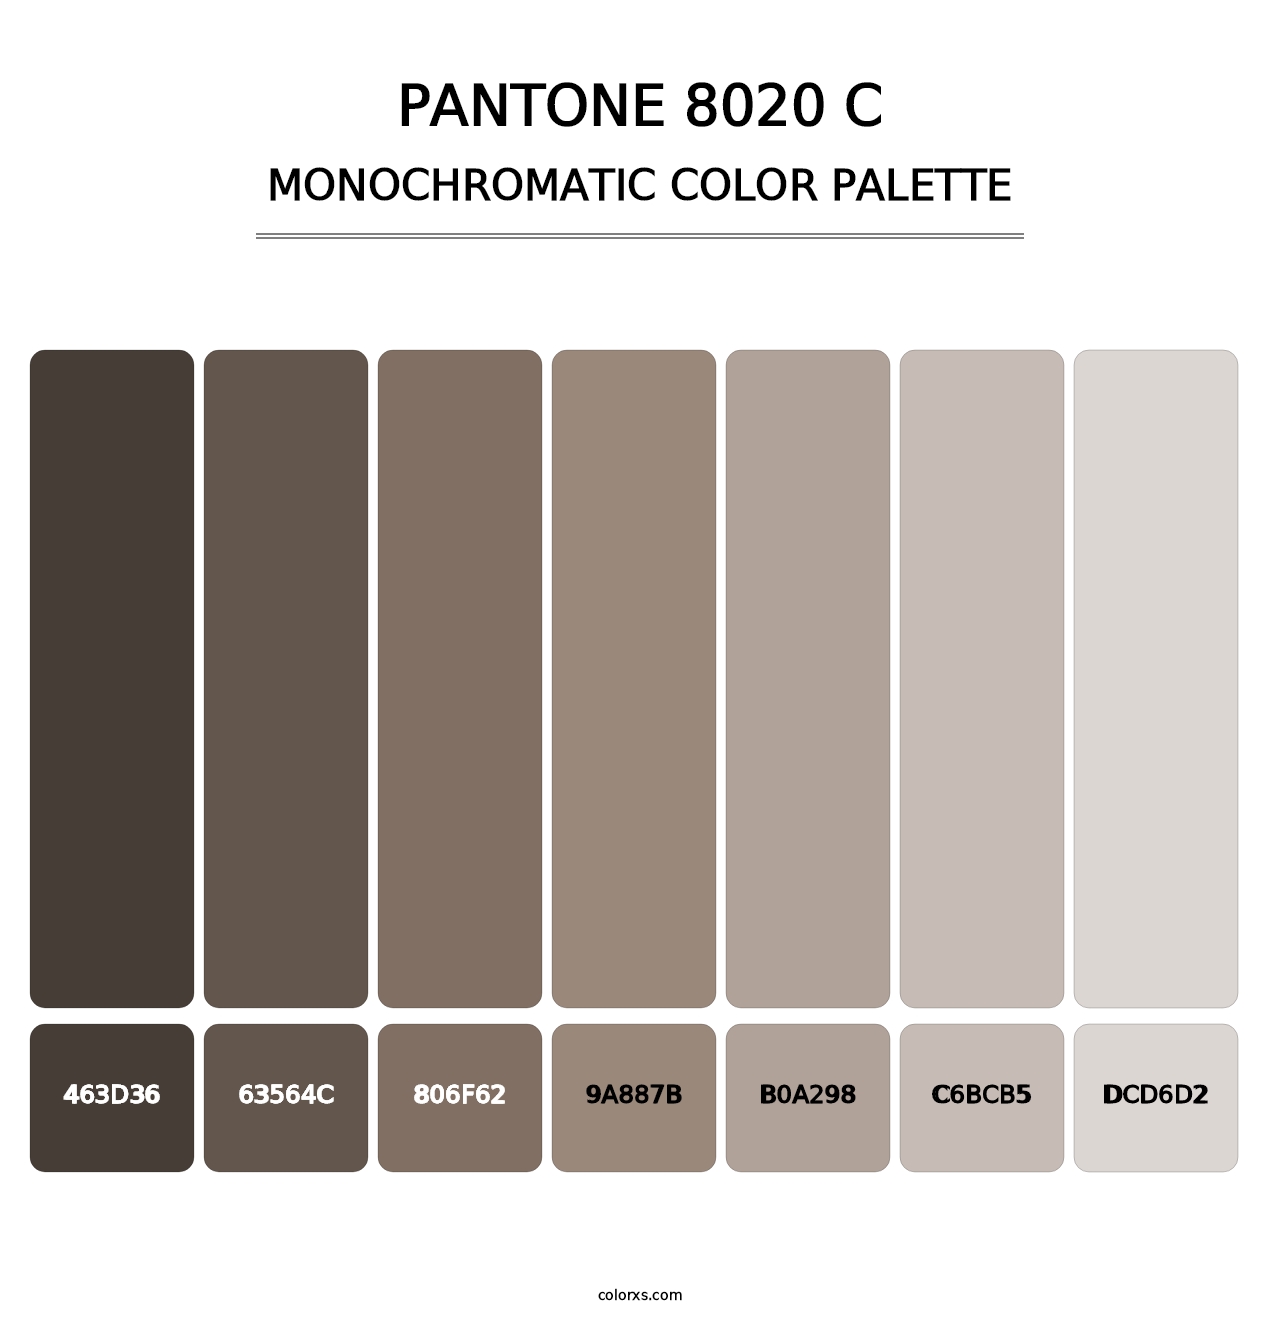 PANTONE 8020 C - Monochromatic Color Palette